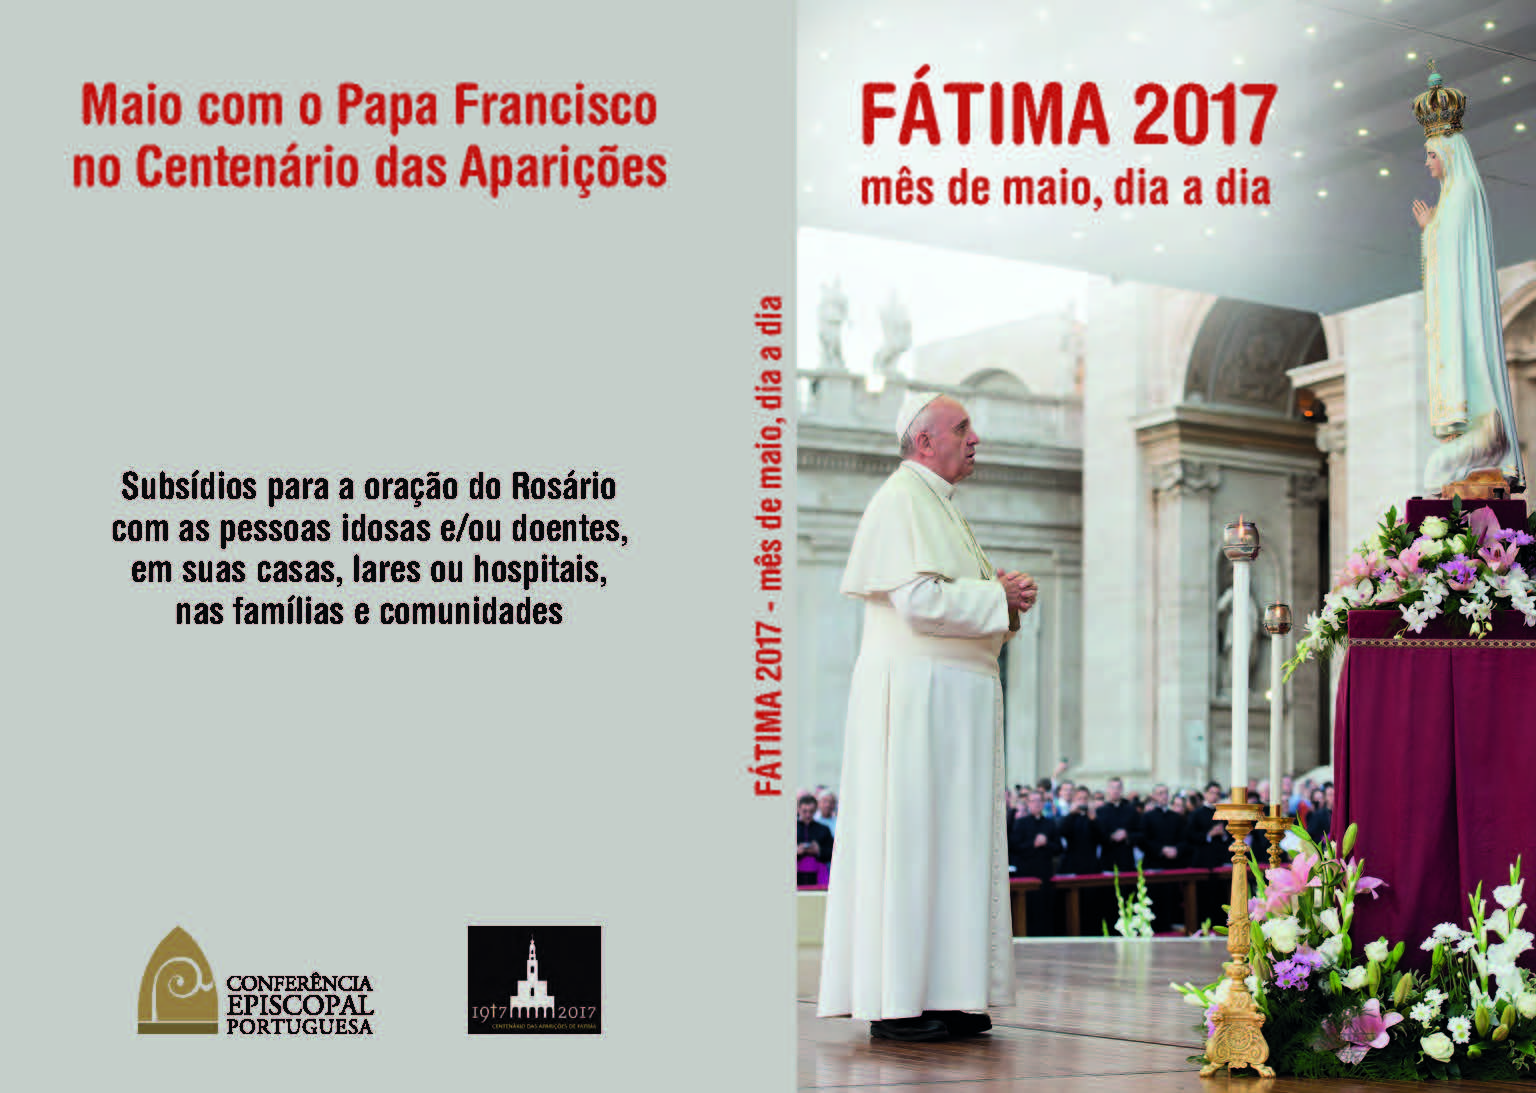 Fatima2017_PapaFrancisco_MaioDiaDia_capa.jpg